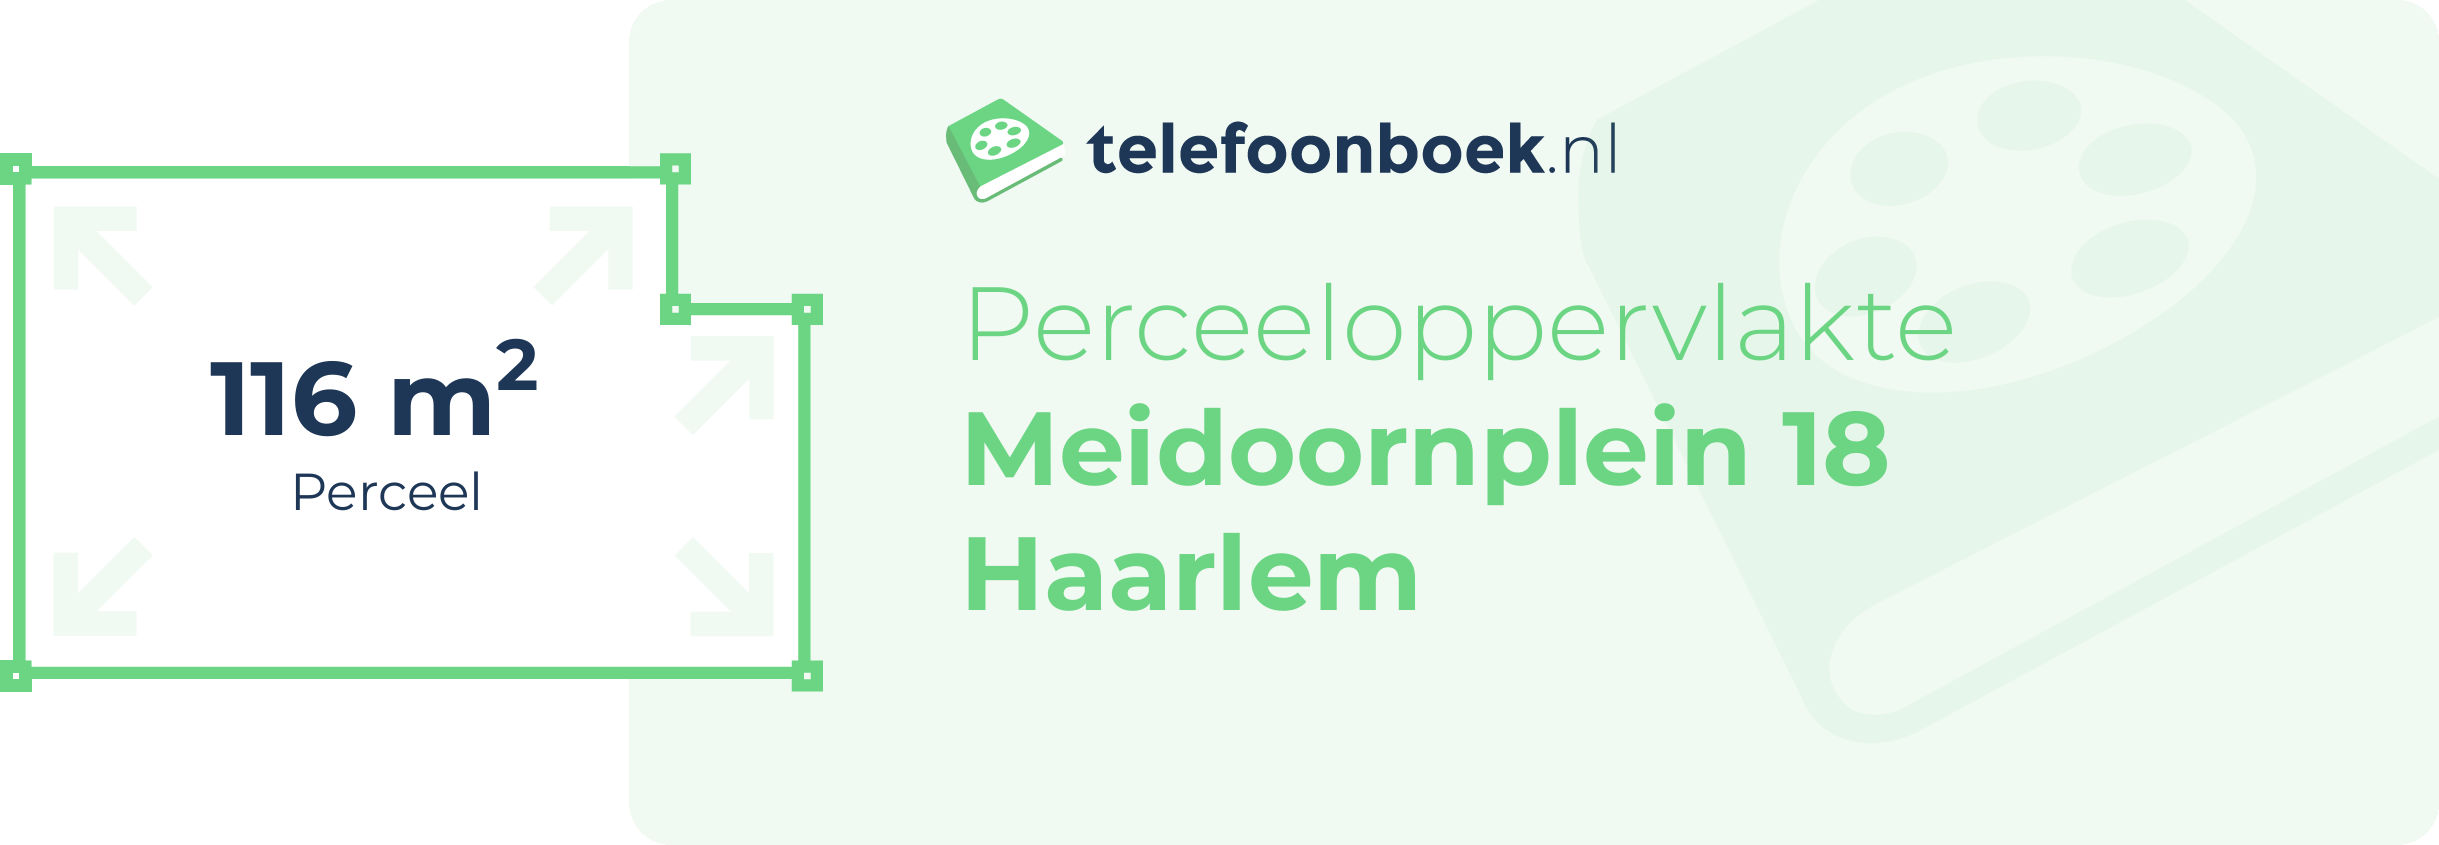 Perceeloppervlakte Meidoornplein 18 Haarlem